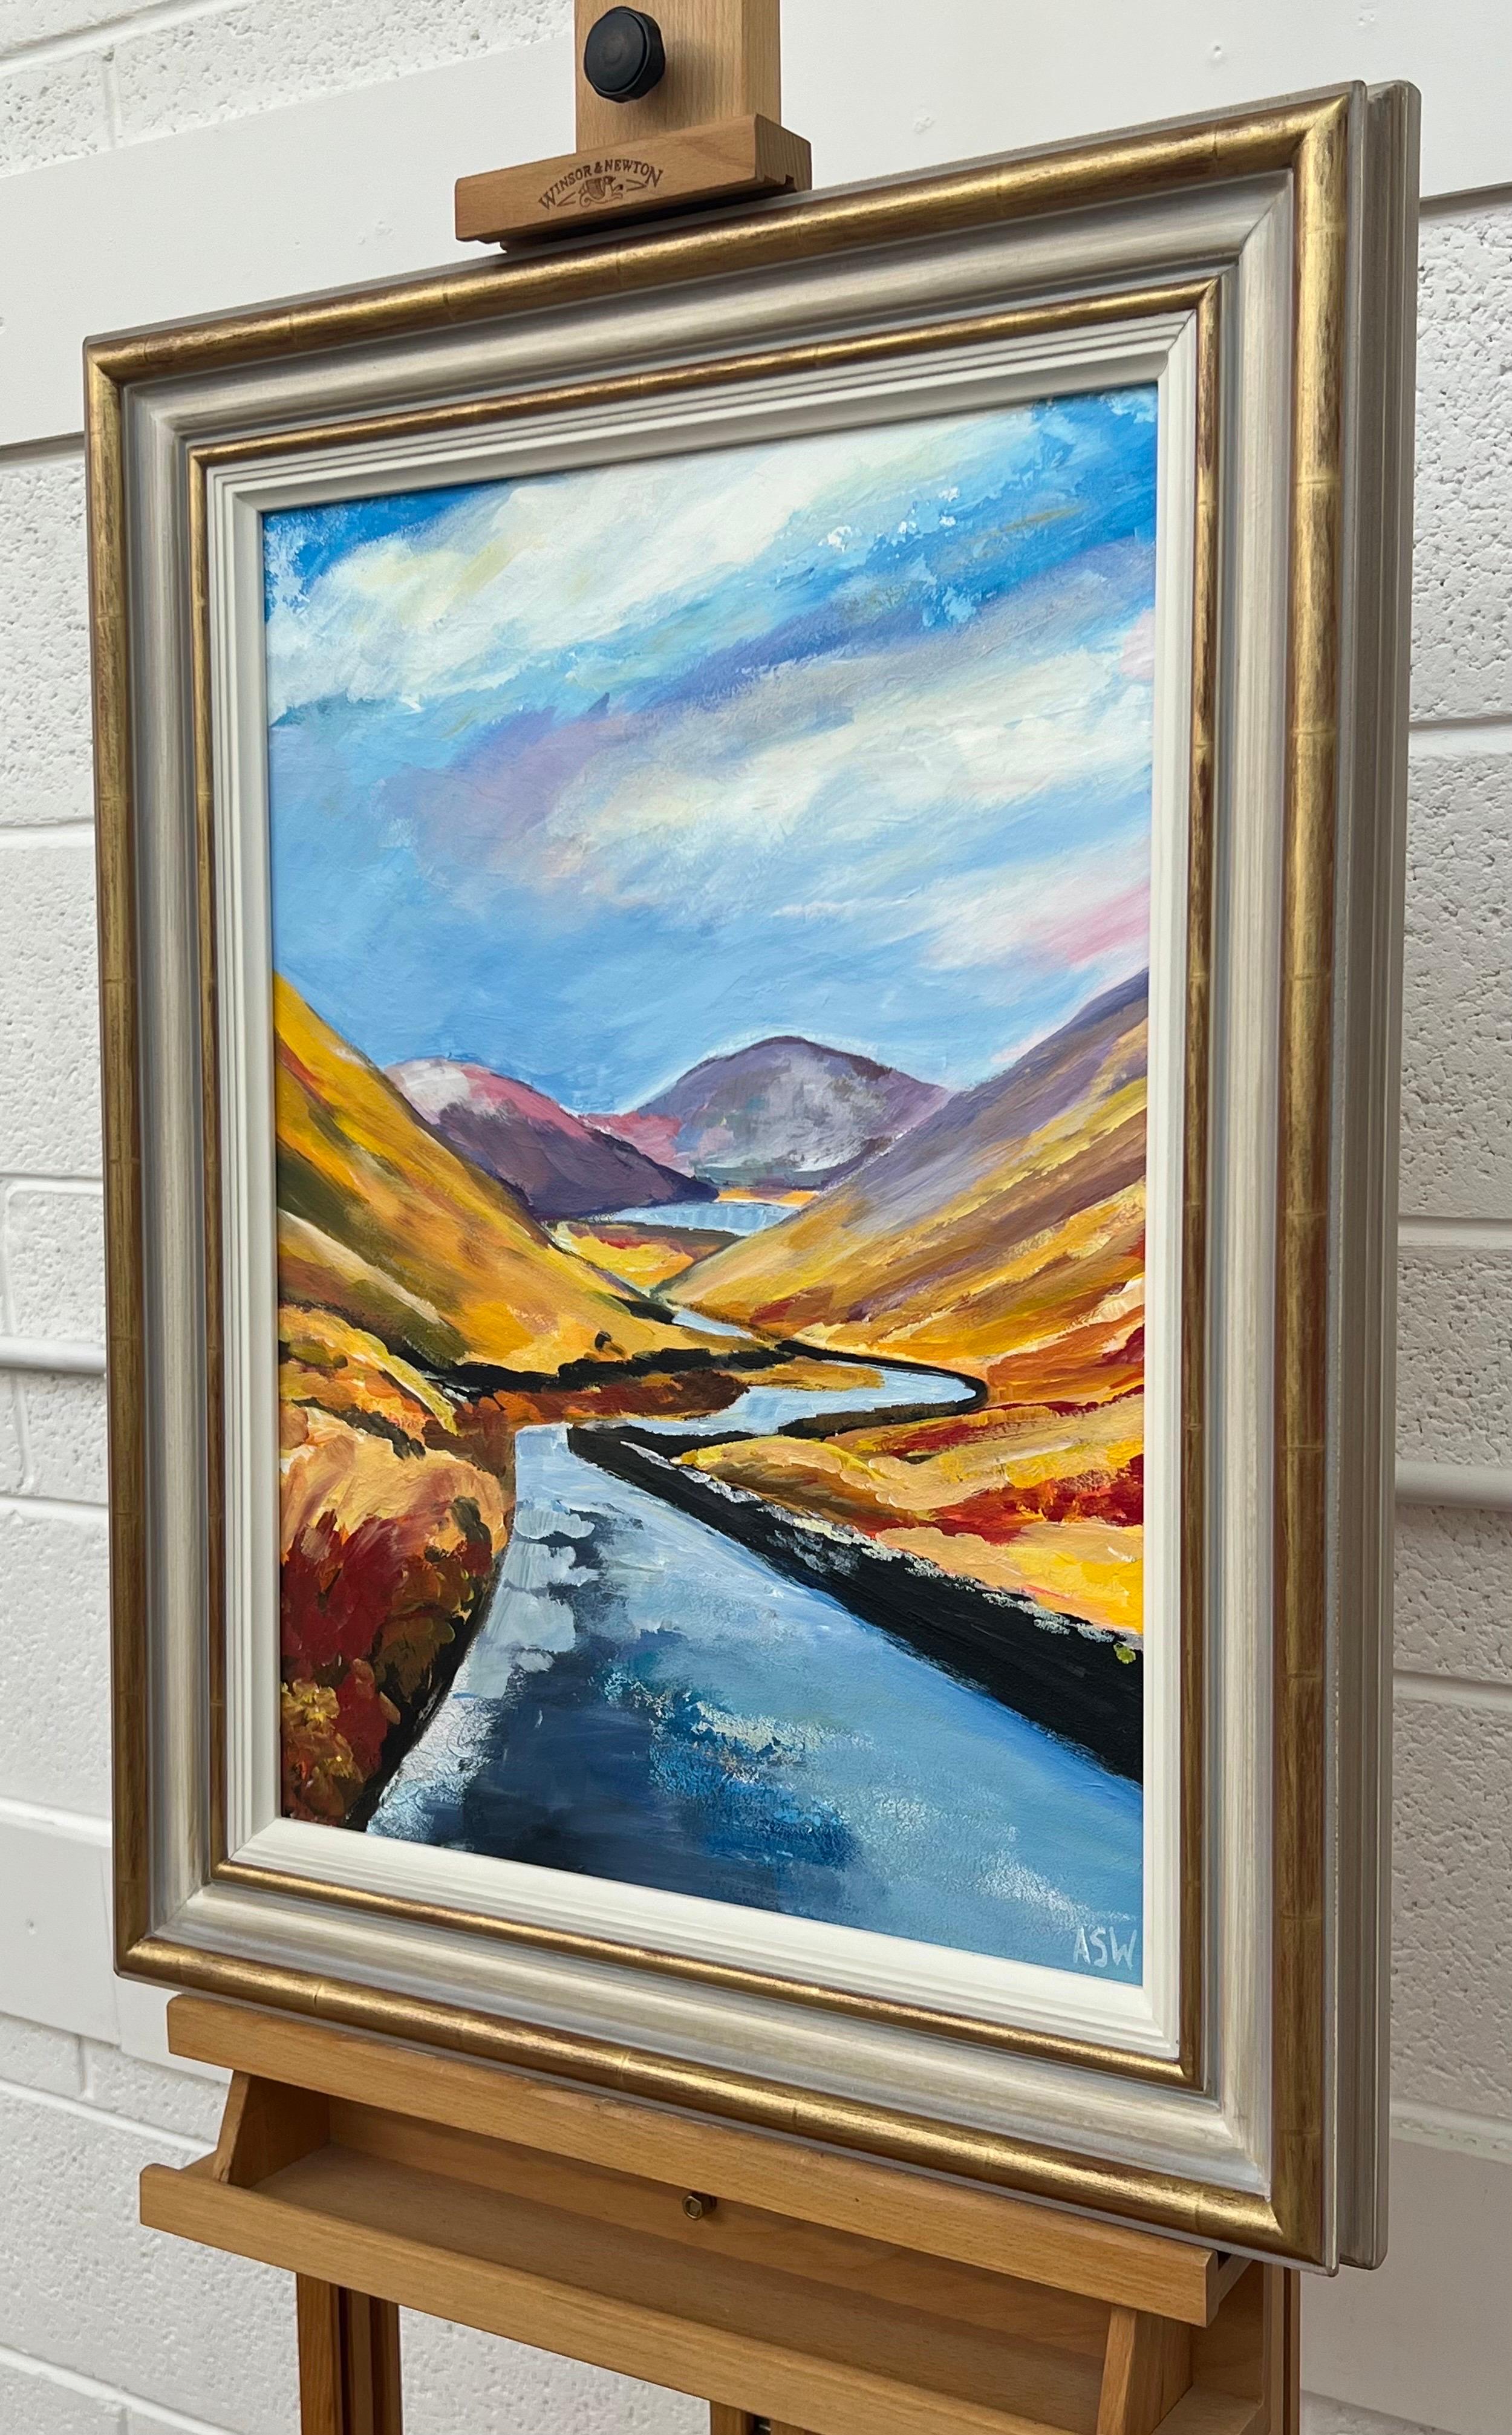 Un souvenir du paysage de montagne de Kirkstone Pass dans la région des lacs en Angleterre, par un artiste britannique contemporain 

L'œuvre d'art mesure 16 x 22 pouces 
Le cadre mesure 22 x 28 pouces 

Angela Wakefield a fait deux fois la